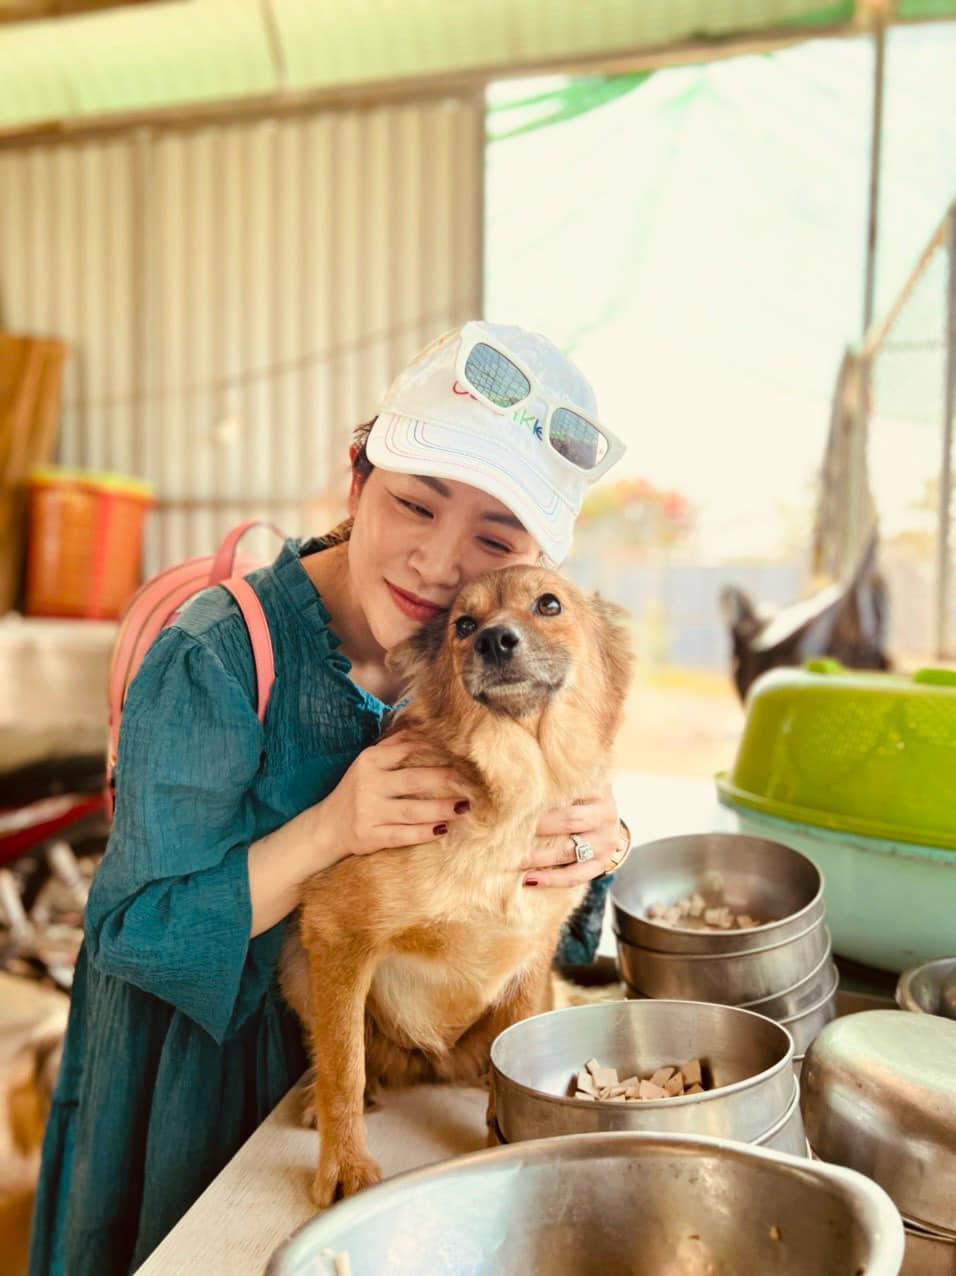 Kiều Linh ghé thăm và chuẩn bị đồ ăn, chăm sóc các chú chó trong trang trại. Ảnh: Facebook nhân vật